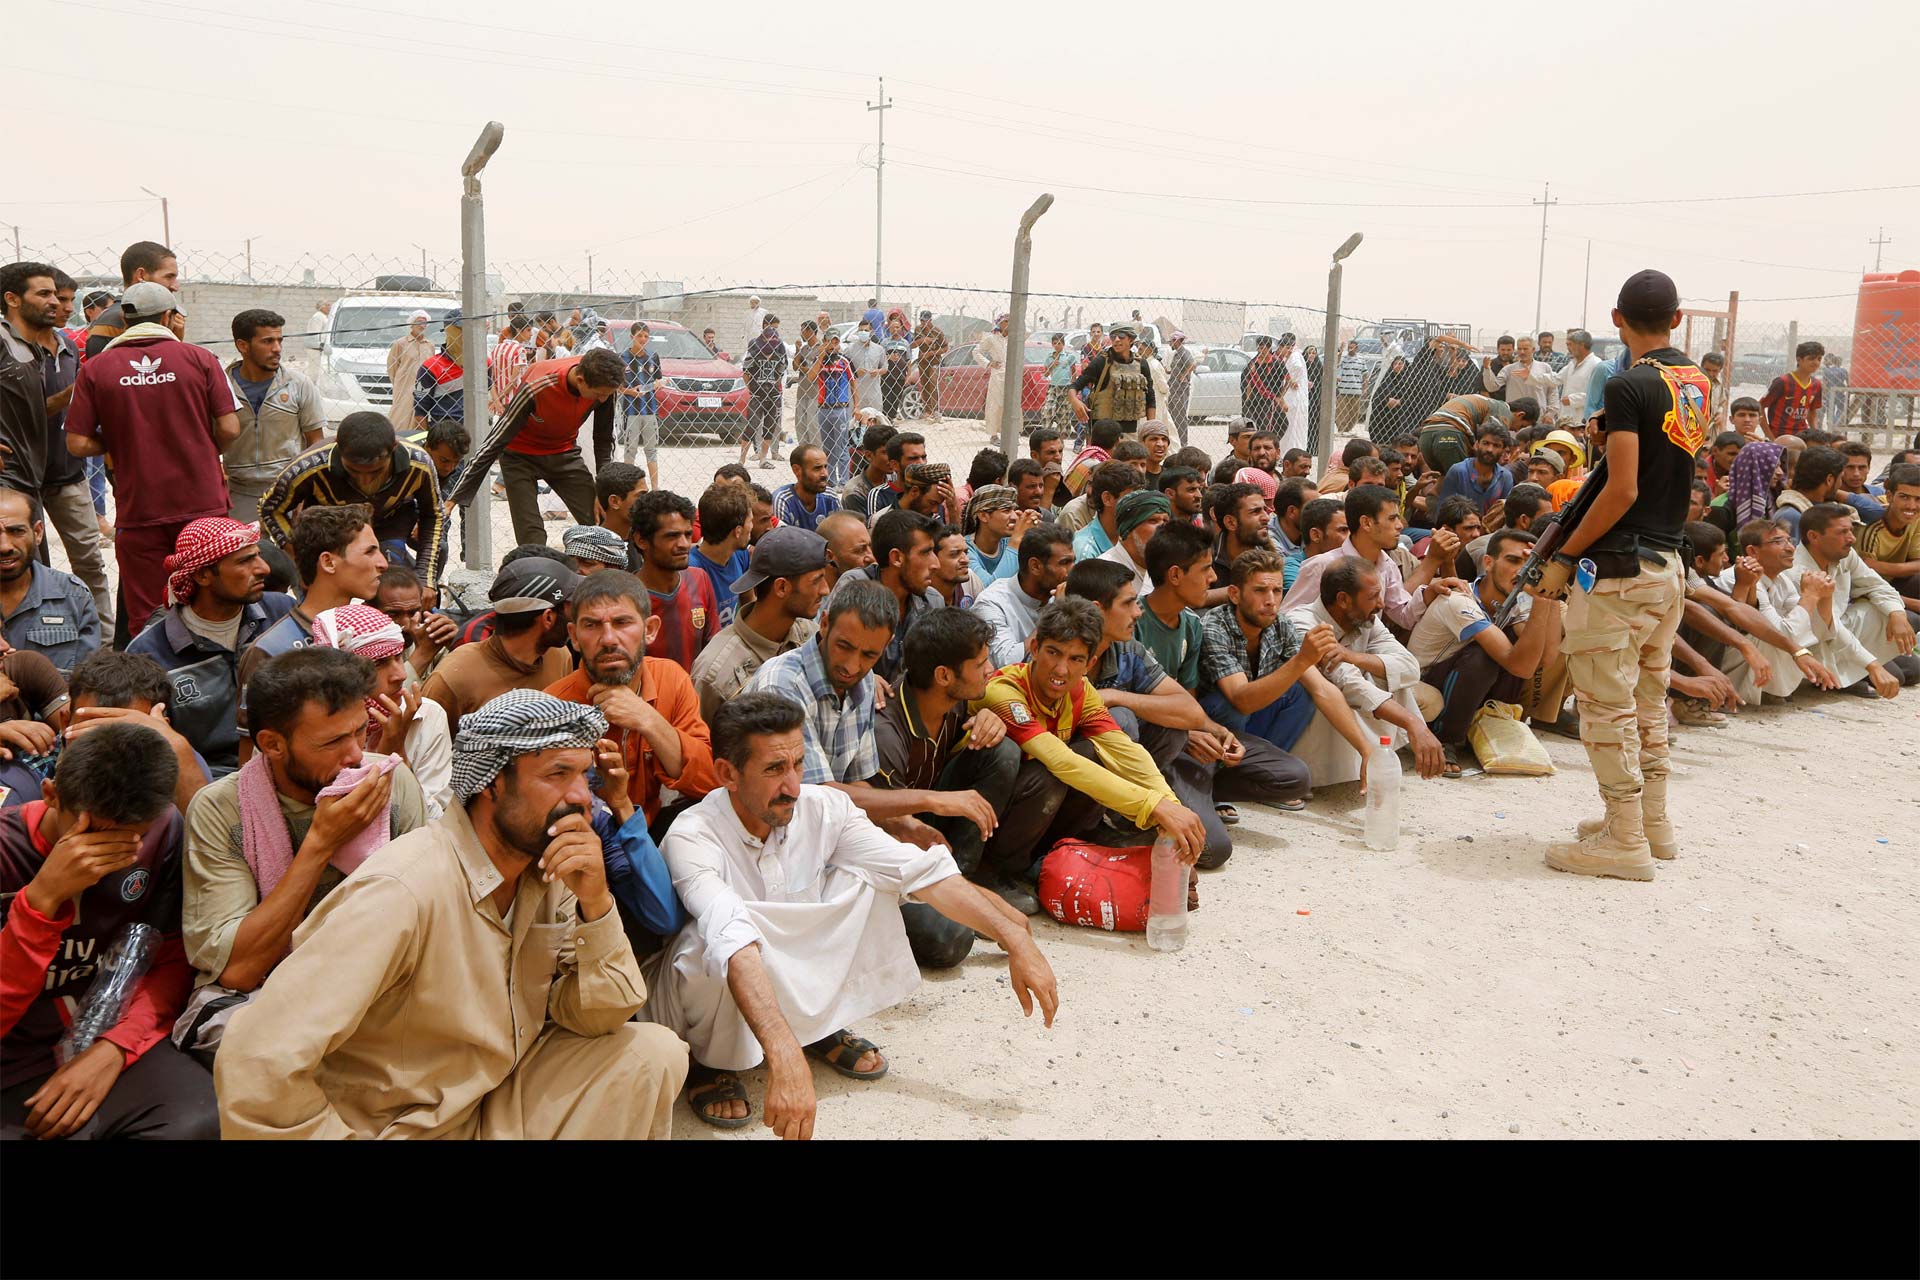 La agencia fronteriza estima que unas diez mil personas cruzarán, por semana, el Mediterráneo desde Libia